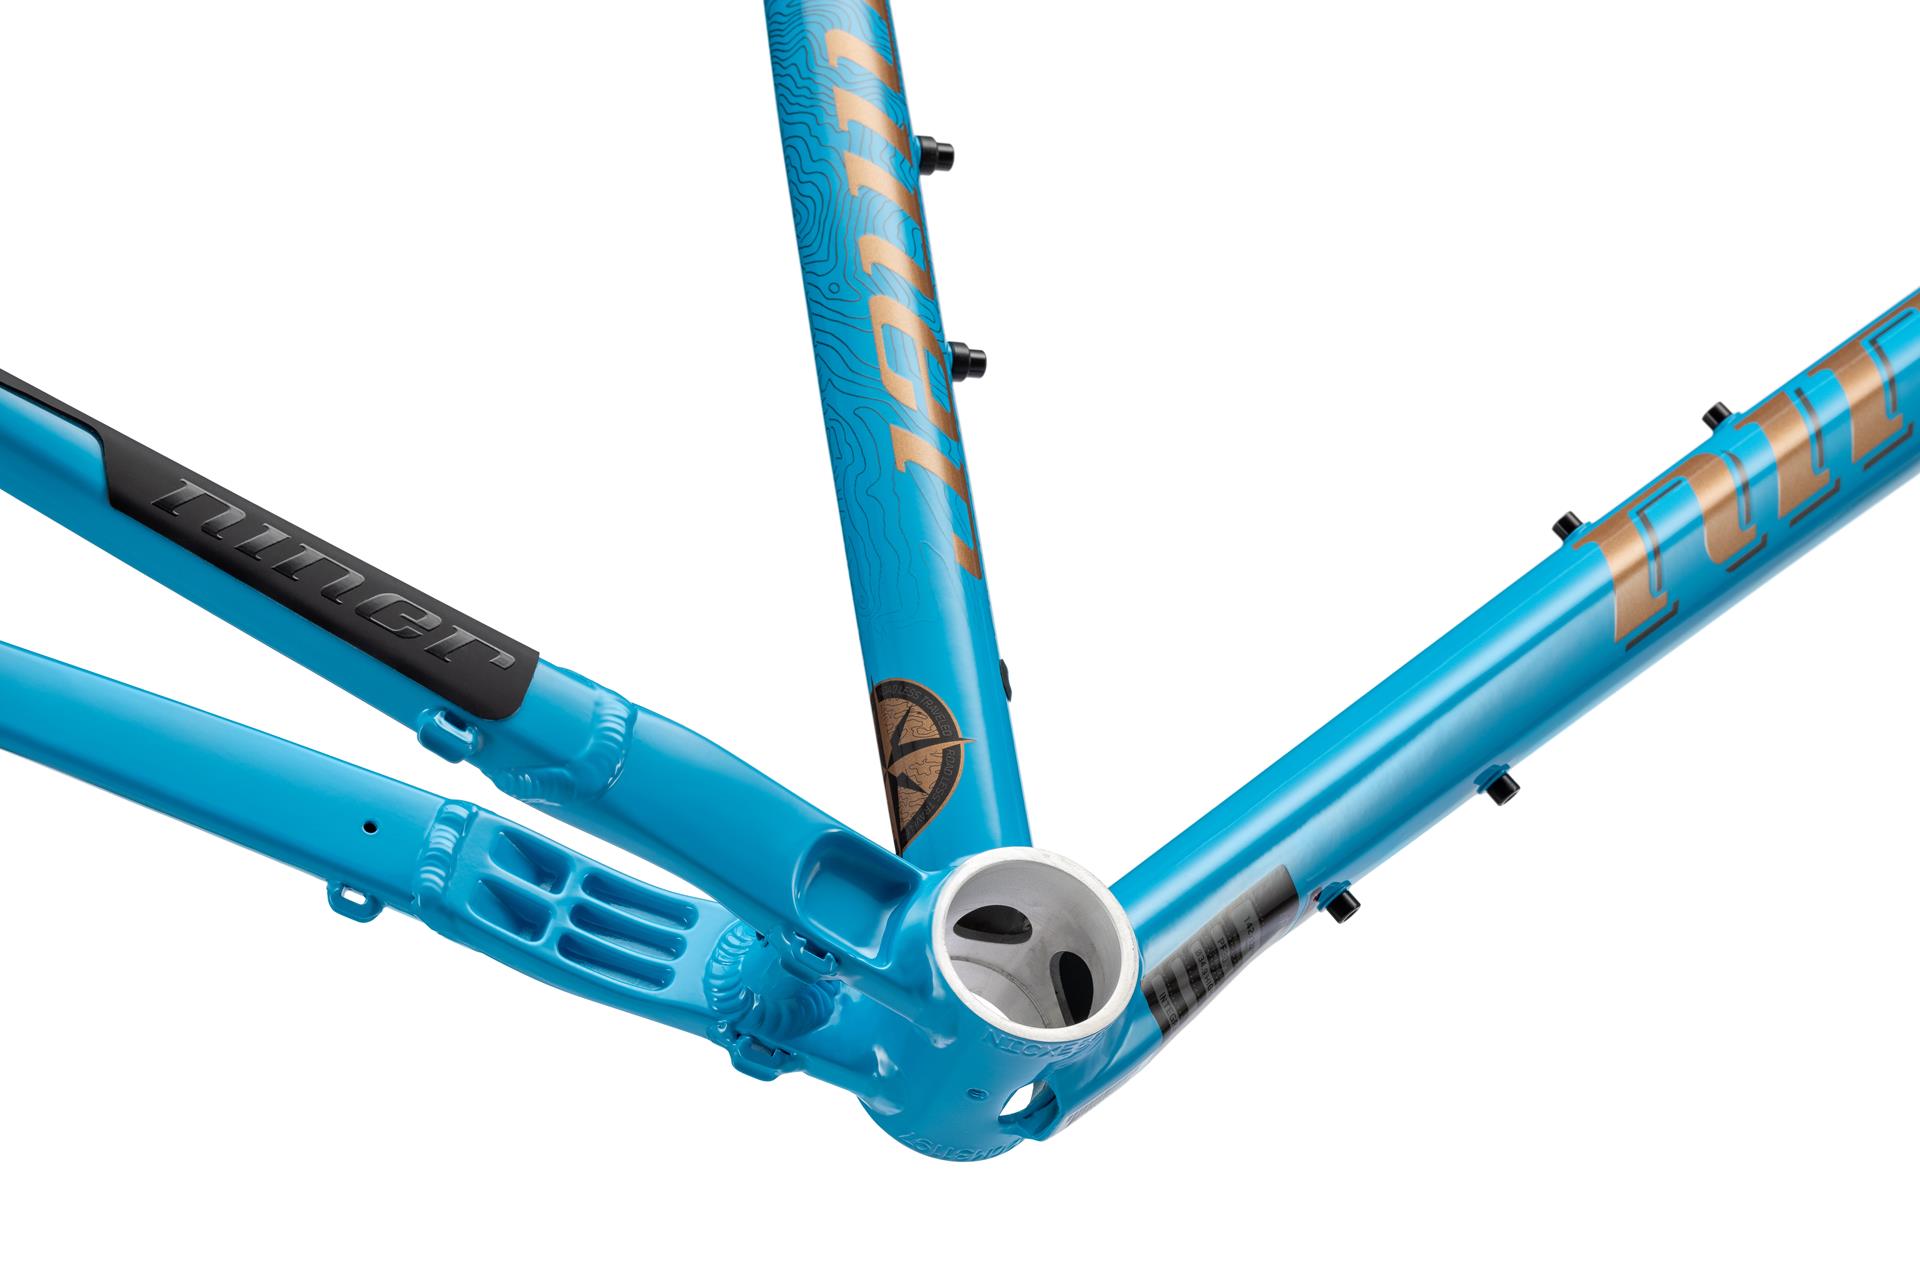 Niner RLT 2-star jalgratas, sinine, 50